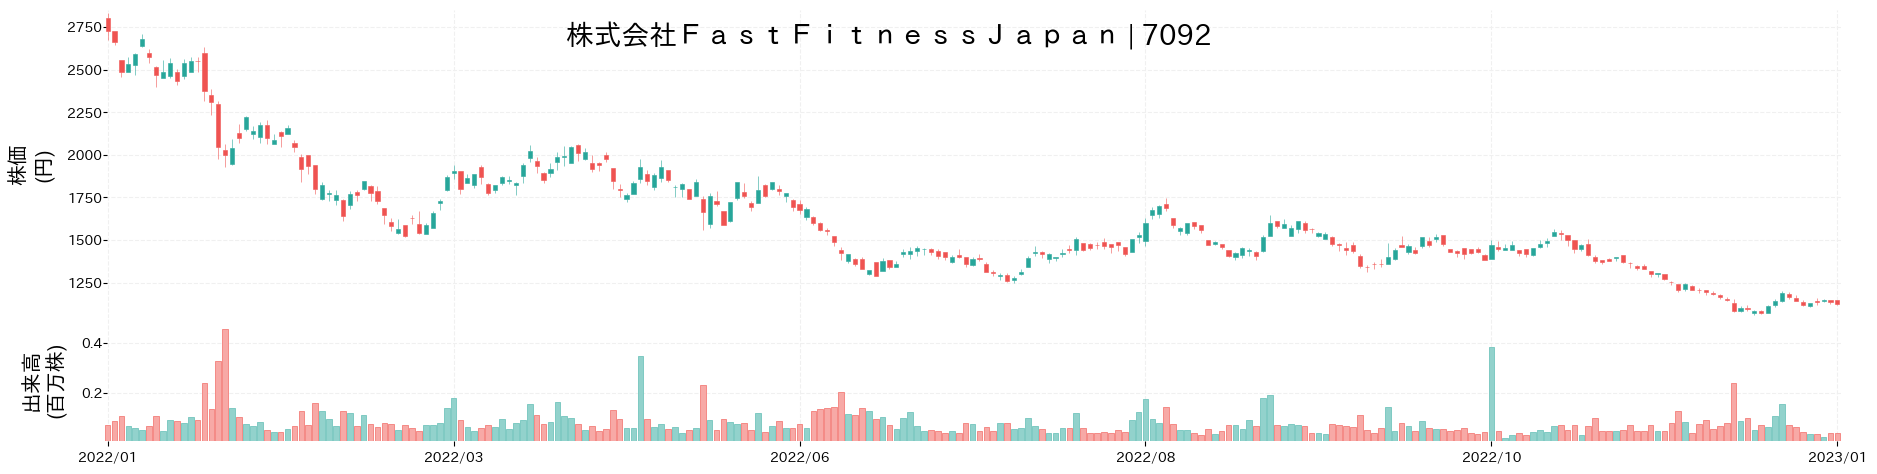 Fast Fitness Japanの株価推移(2022)